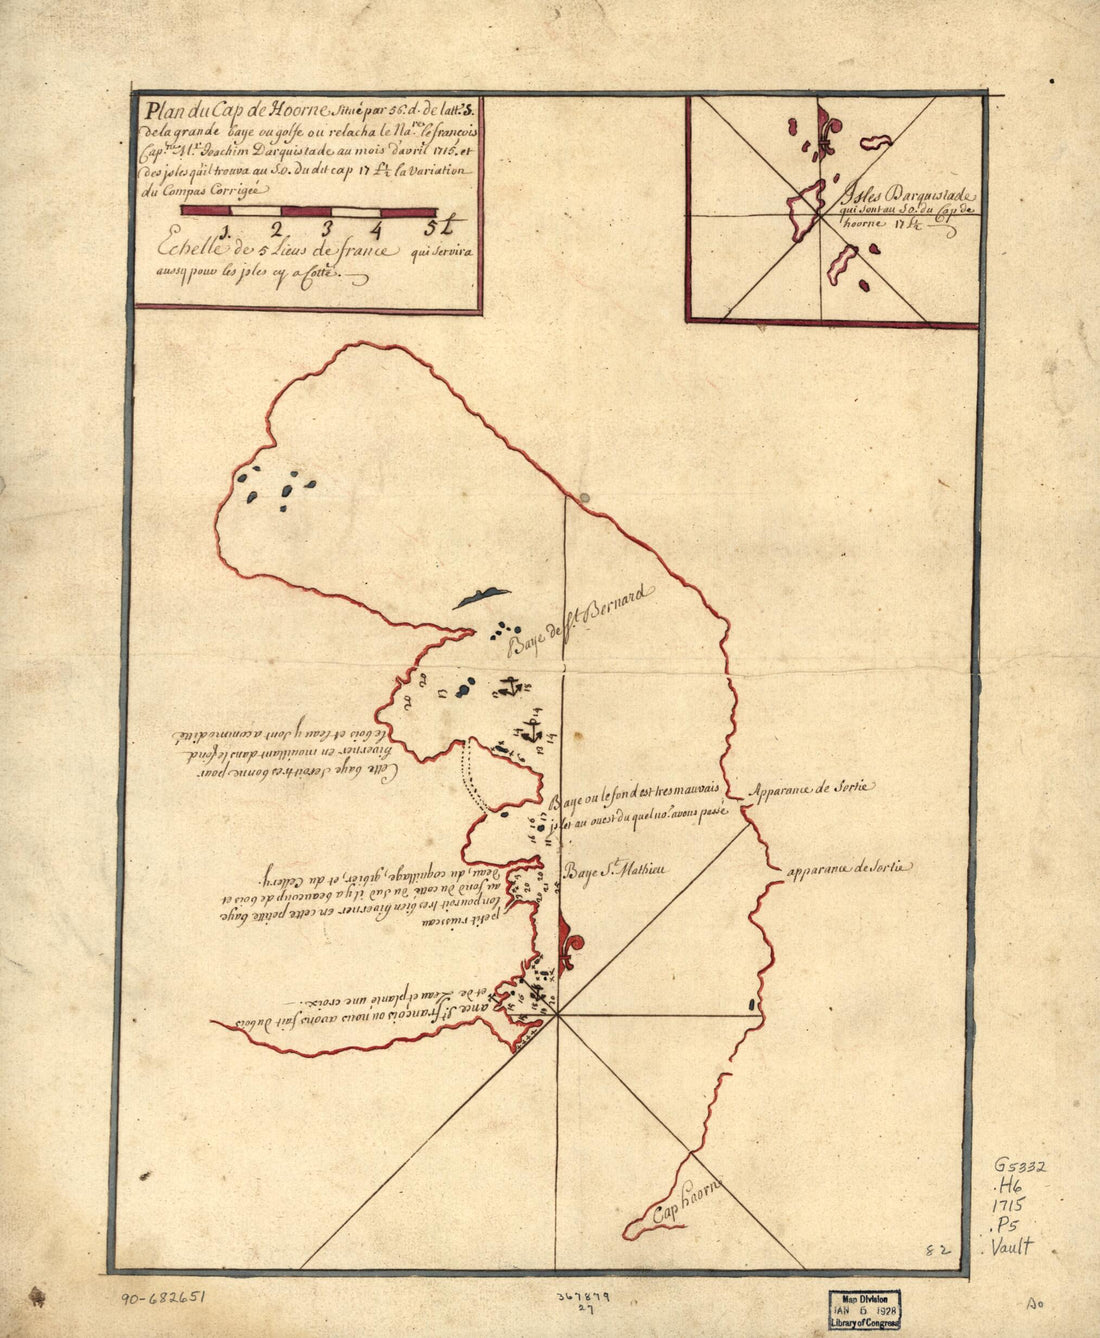 This old map of Plan Du Cap De Hoorne Situé Par 56. D. De Latt. S. De La Grande Baye Ou Golfe Ou Relacha Le Nare. Le François Capne. Mr. Ioachim Darquistade Au Mois D&